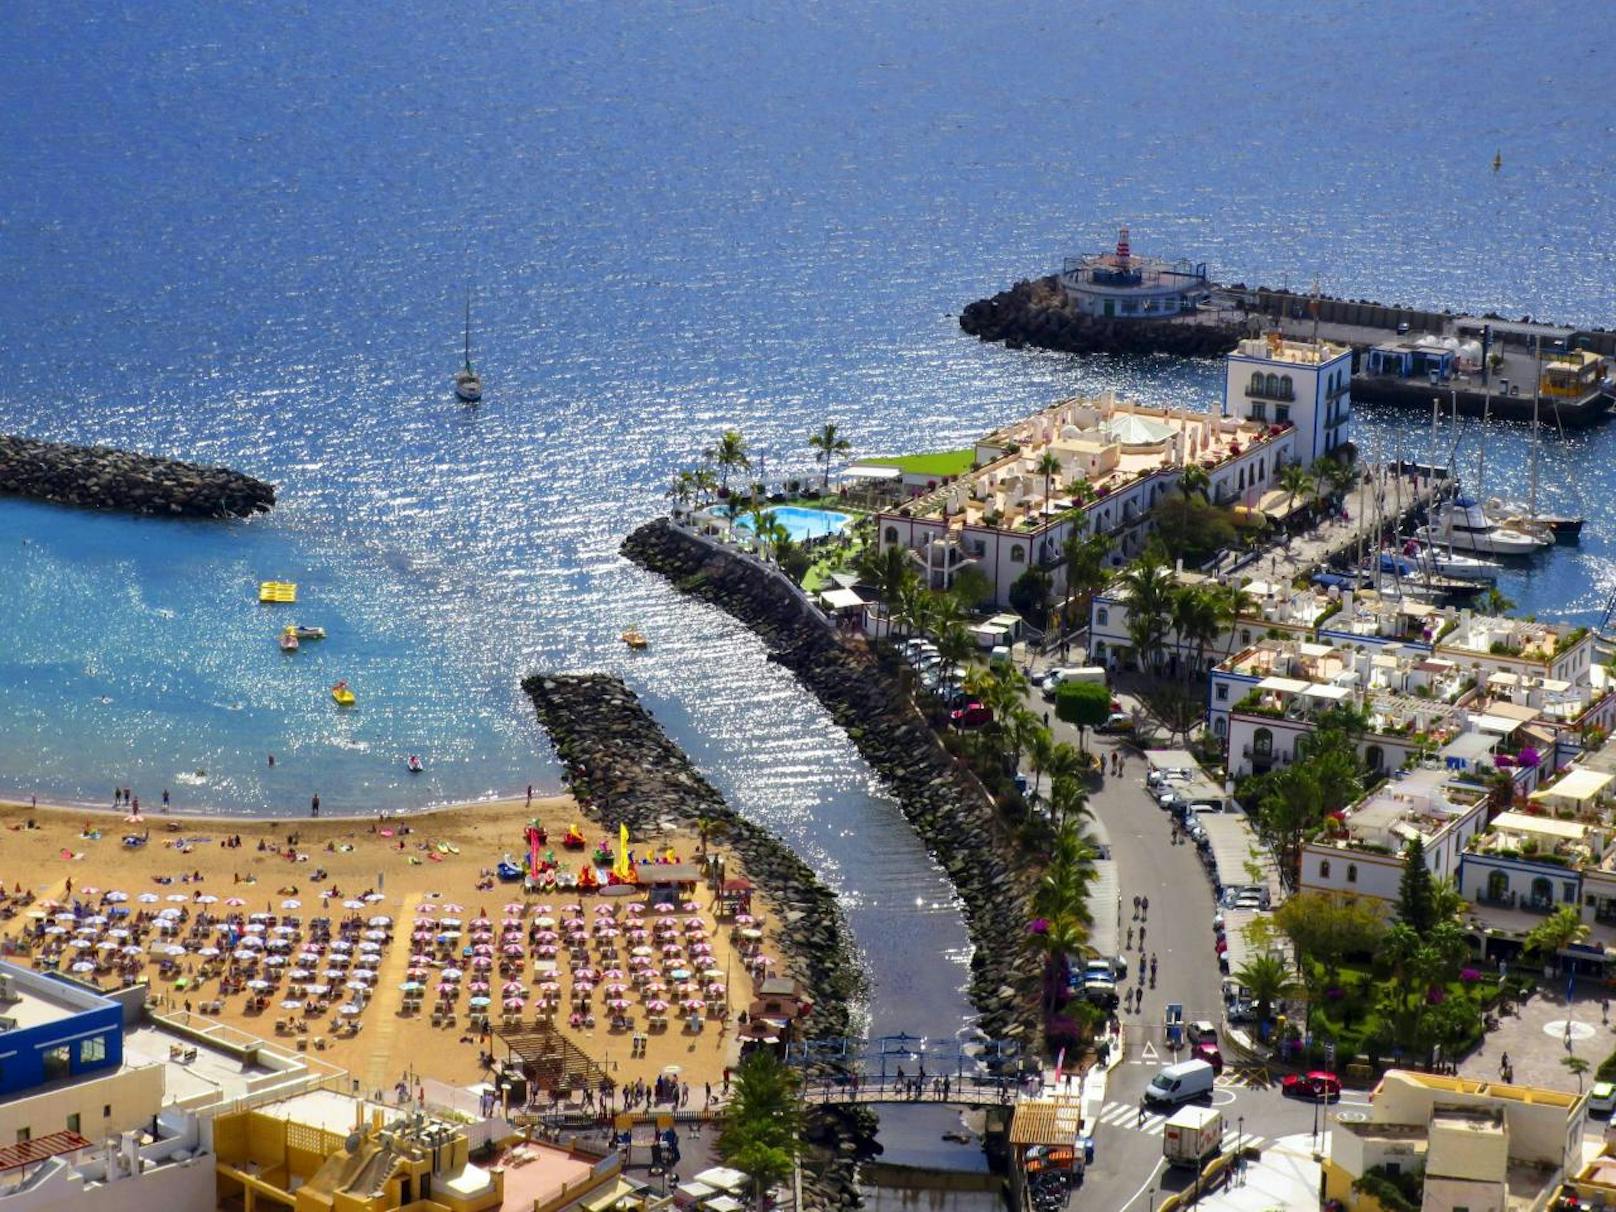 Die teuerste Destination unter den beliebten Winter-Reisezielen ist Las Palmas de Gran Canaria mit durchschnittlich 1.285 Euro für einen einwöchigen Urlaub.